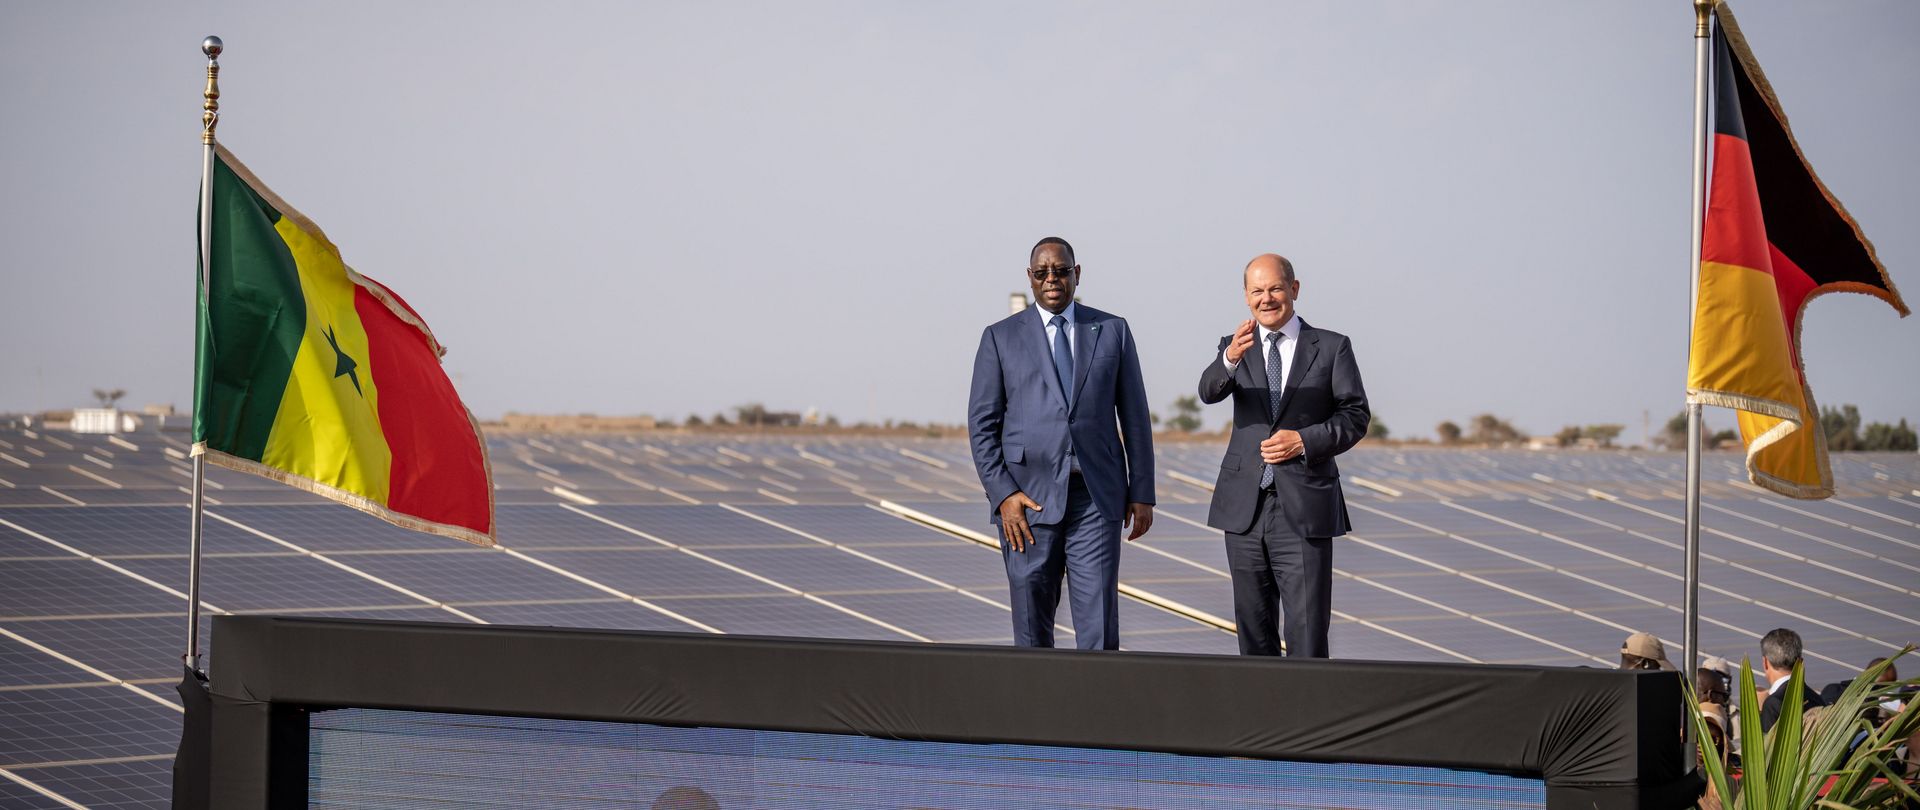 Le président Macky Sall (à gauche) et le chancelier allemand Olaf Scholz (à droite) inaugurent une centrale photovoltaïque lors de la visite du chancelier au Sénégal en 2022. 